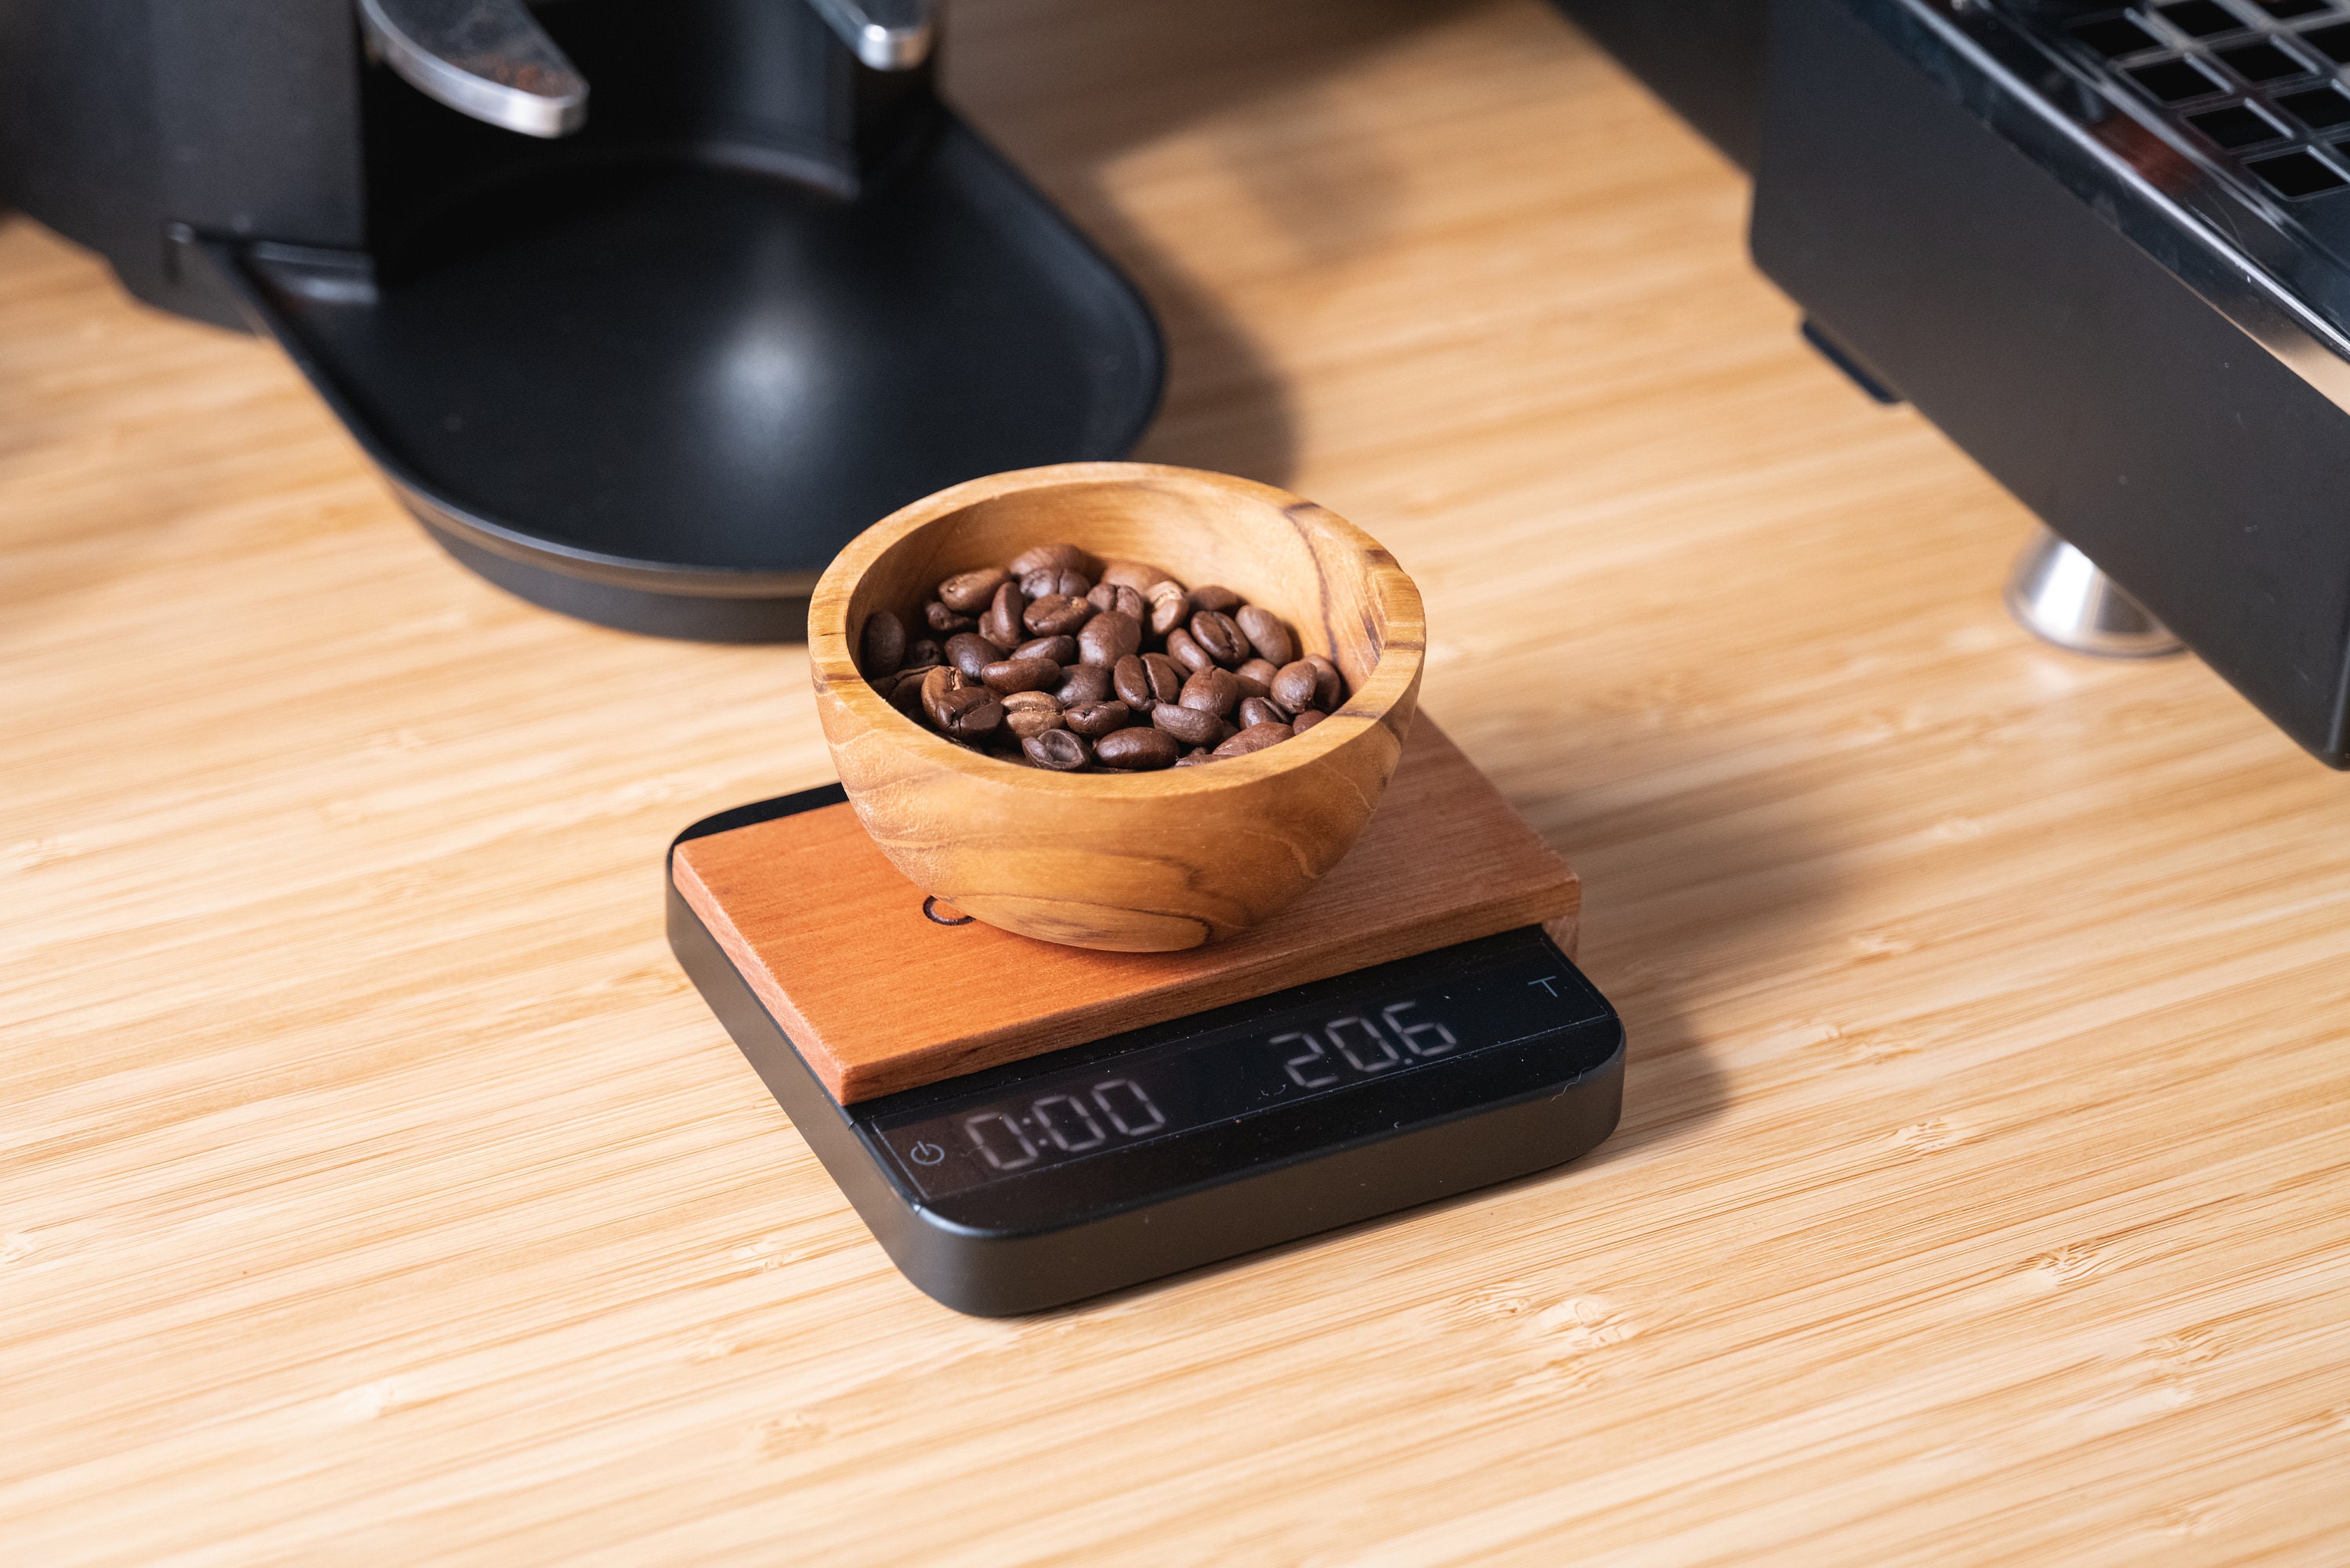 Blue Star Coffee Espresso Coffee Timer Scales